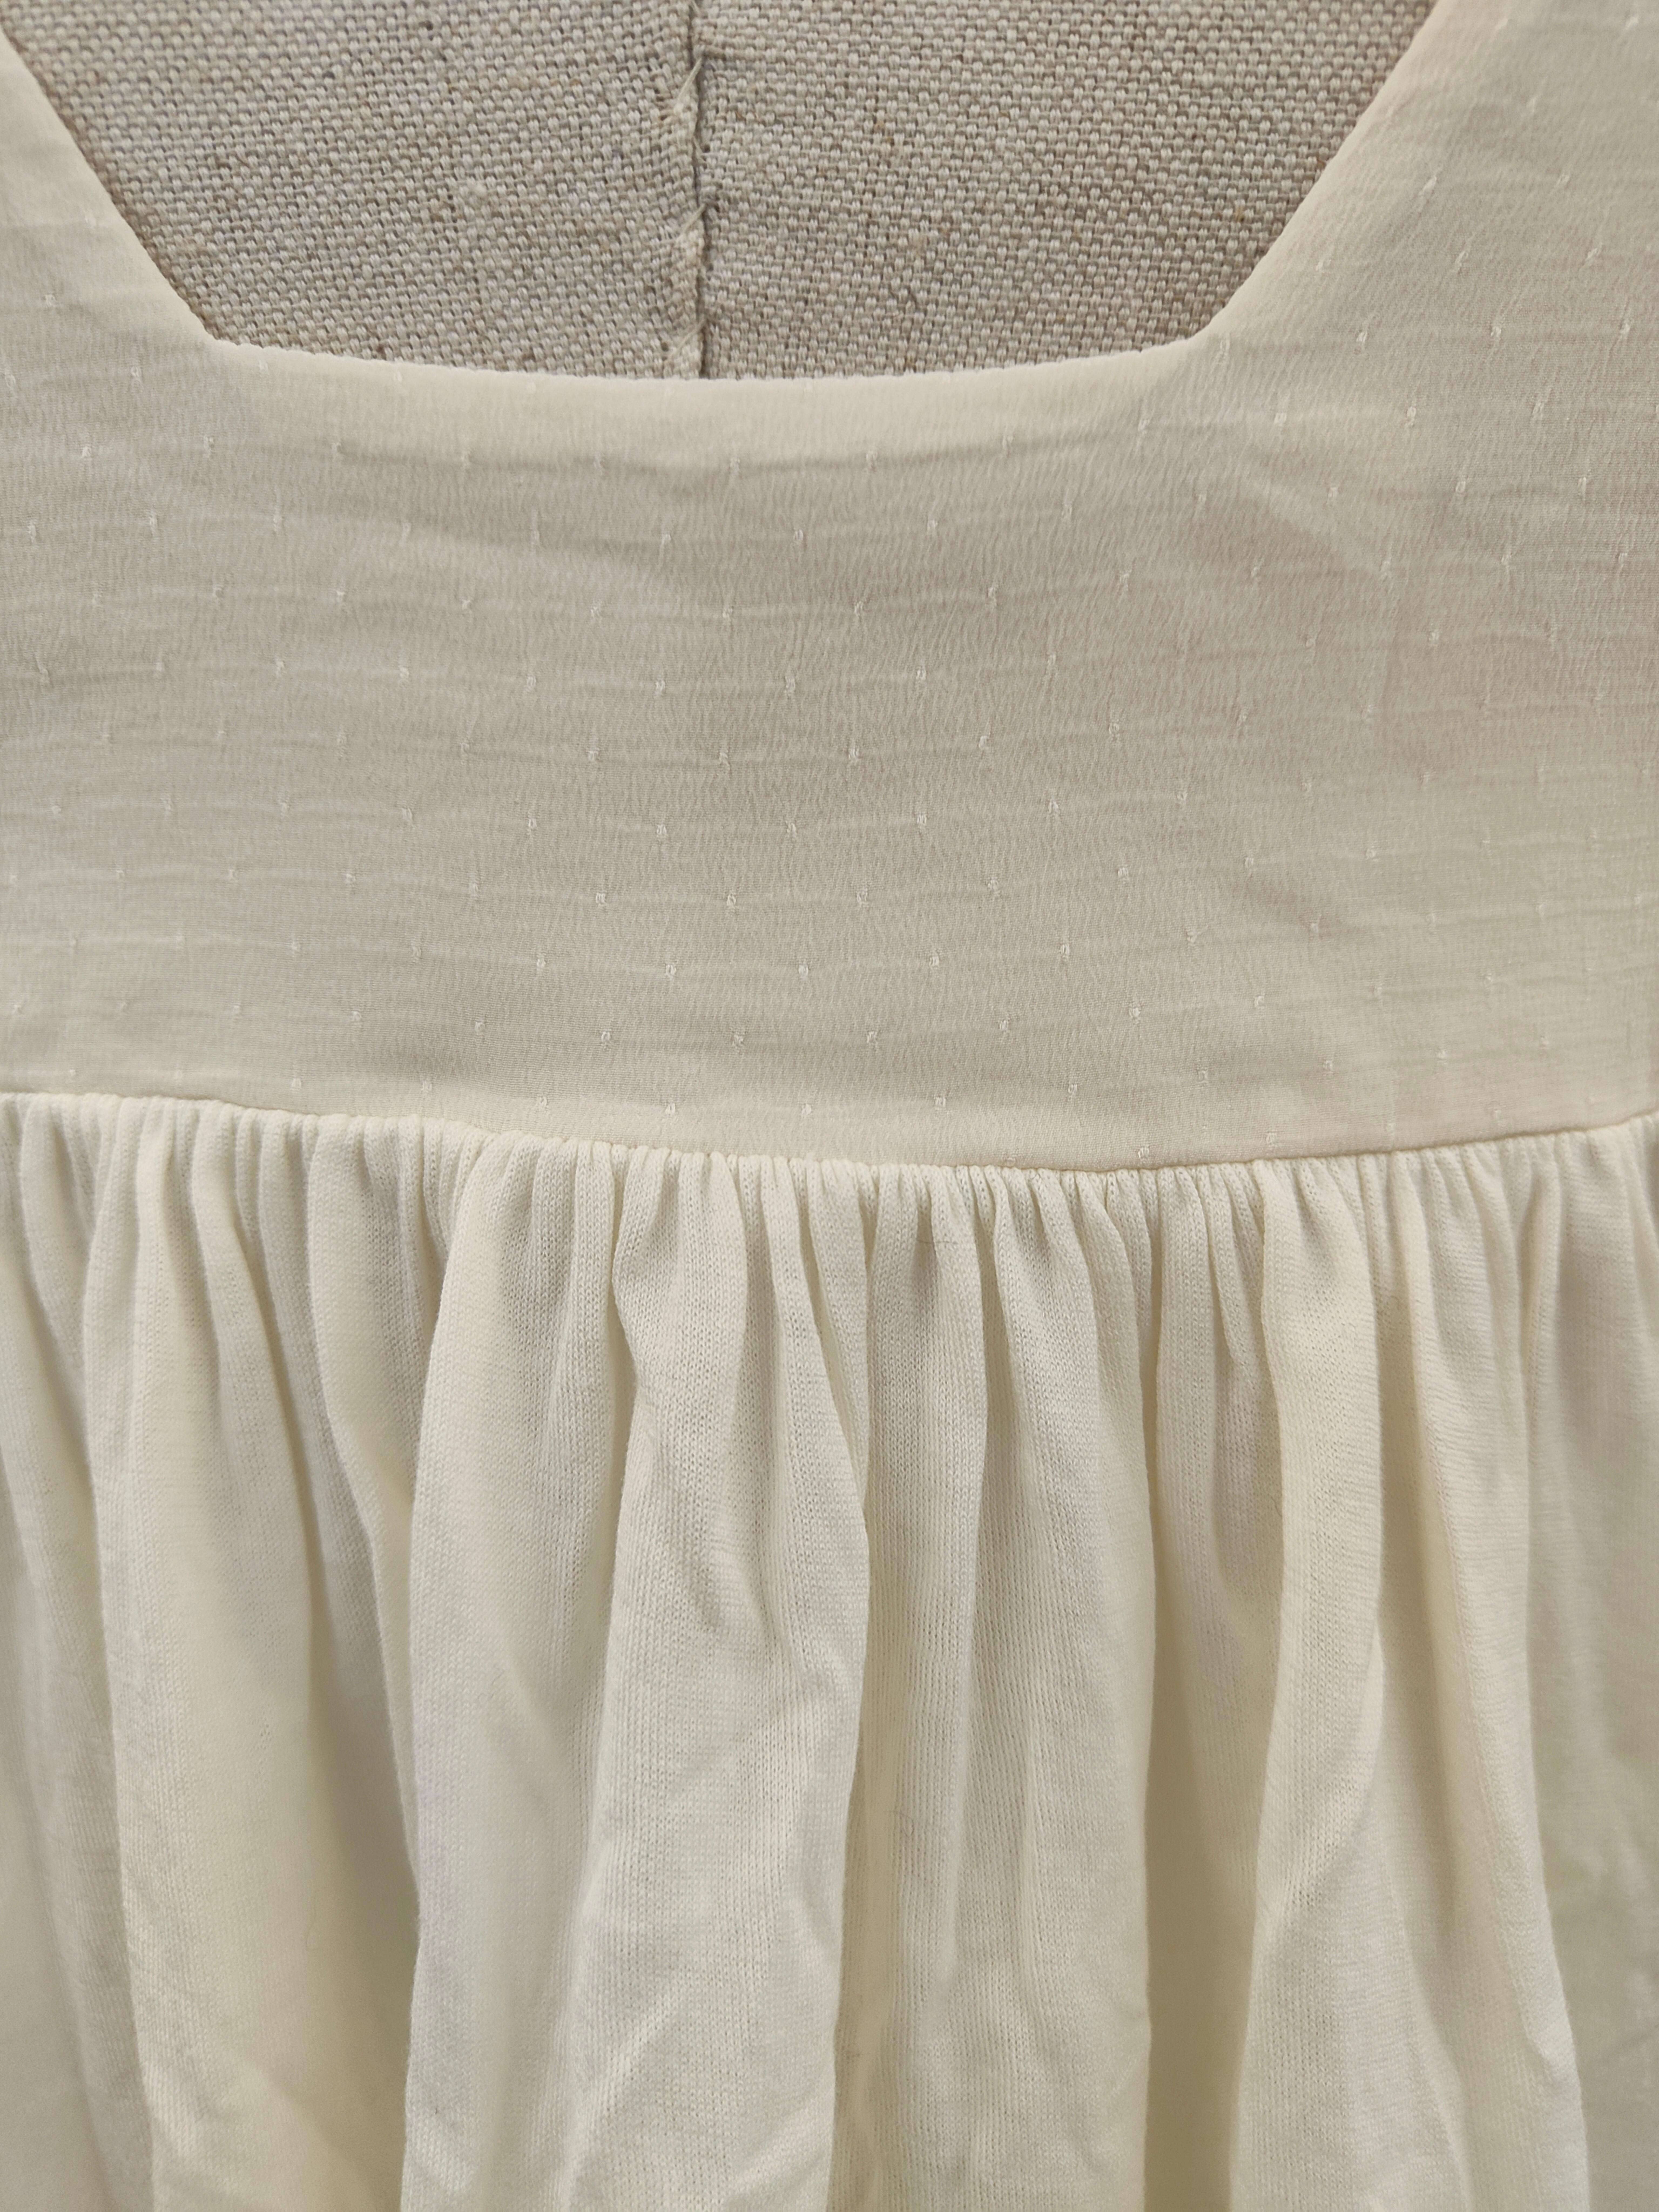 Chloé silk top In Good Condition For Sale In Capri, IT